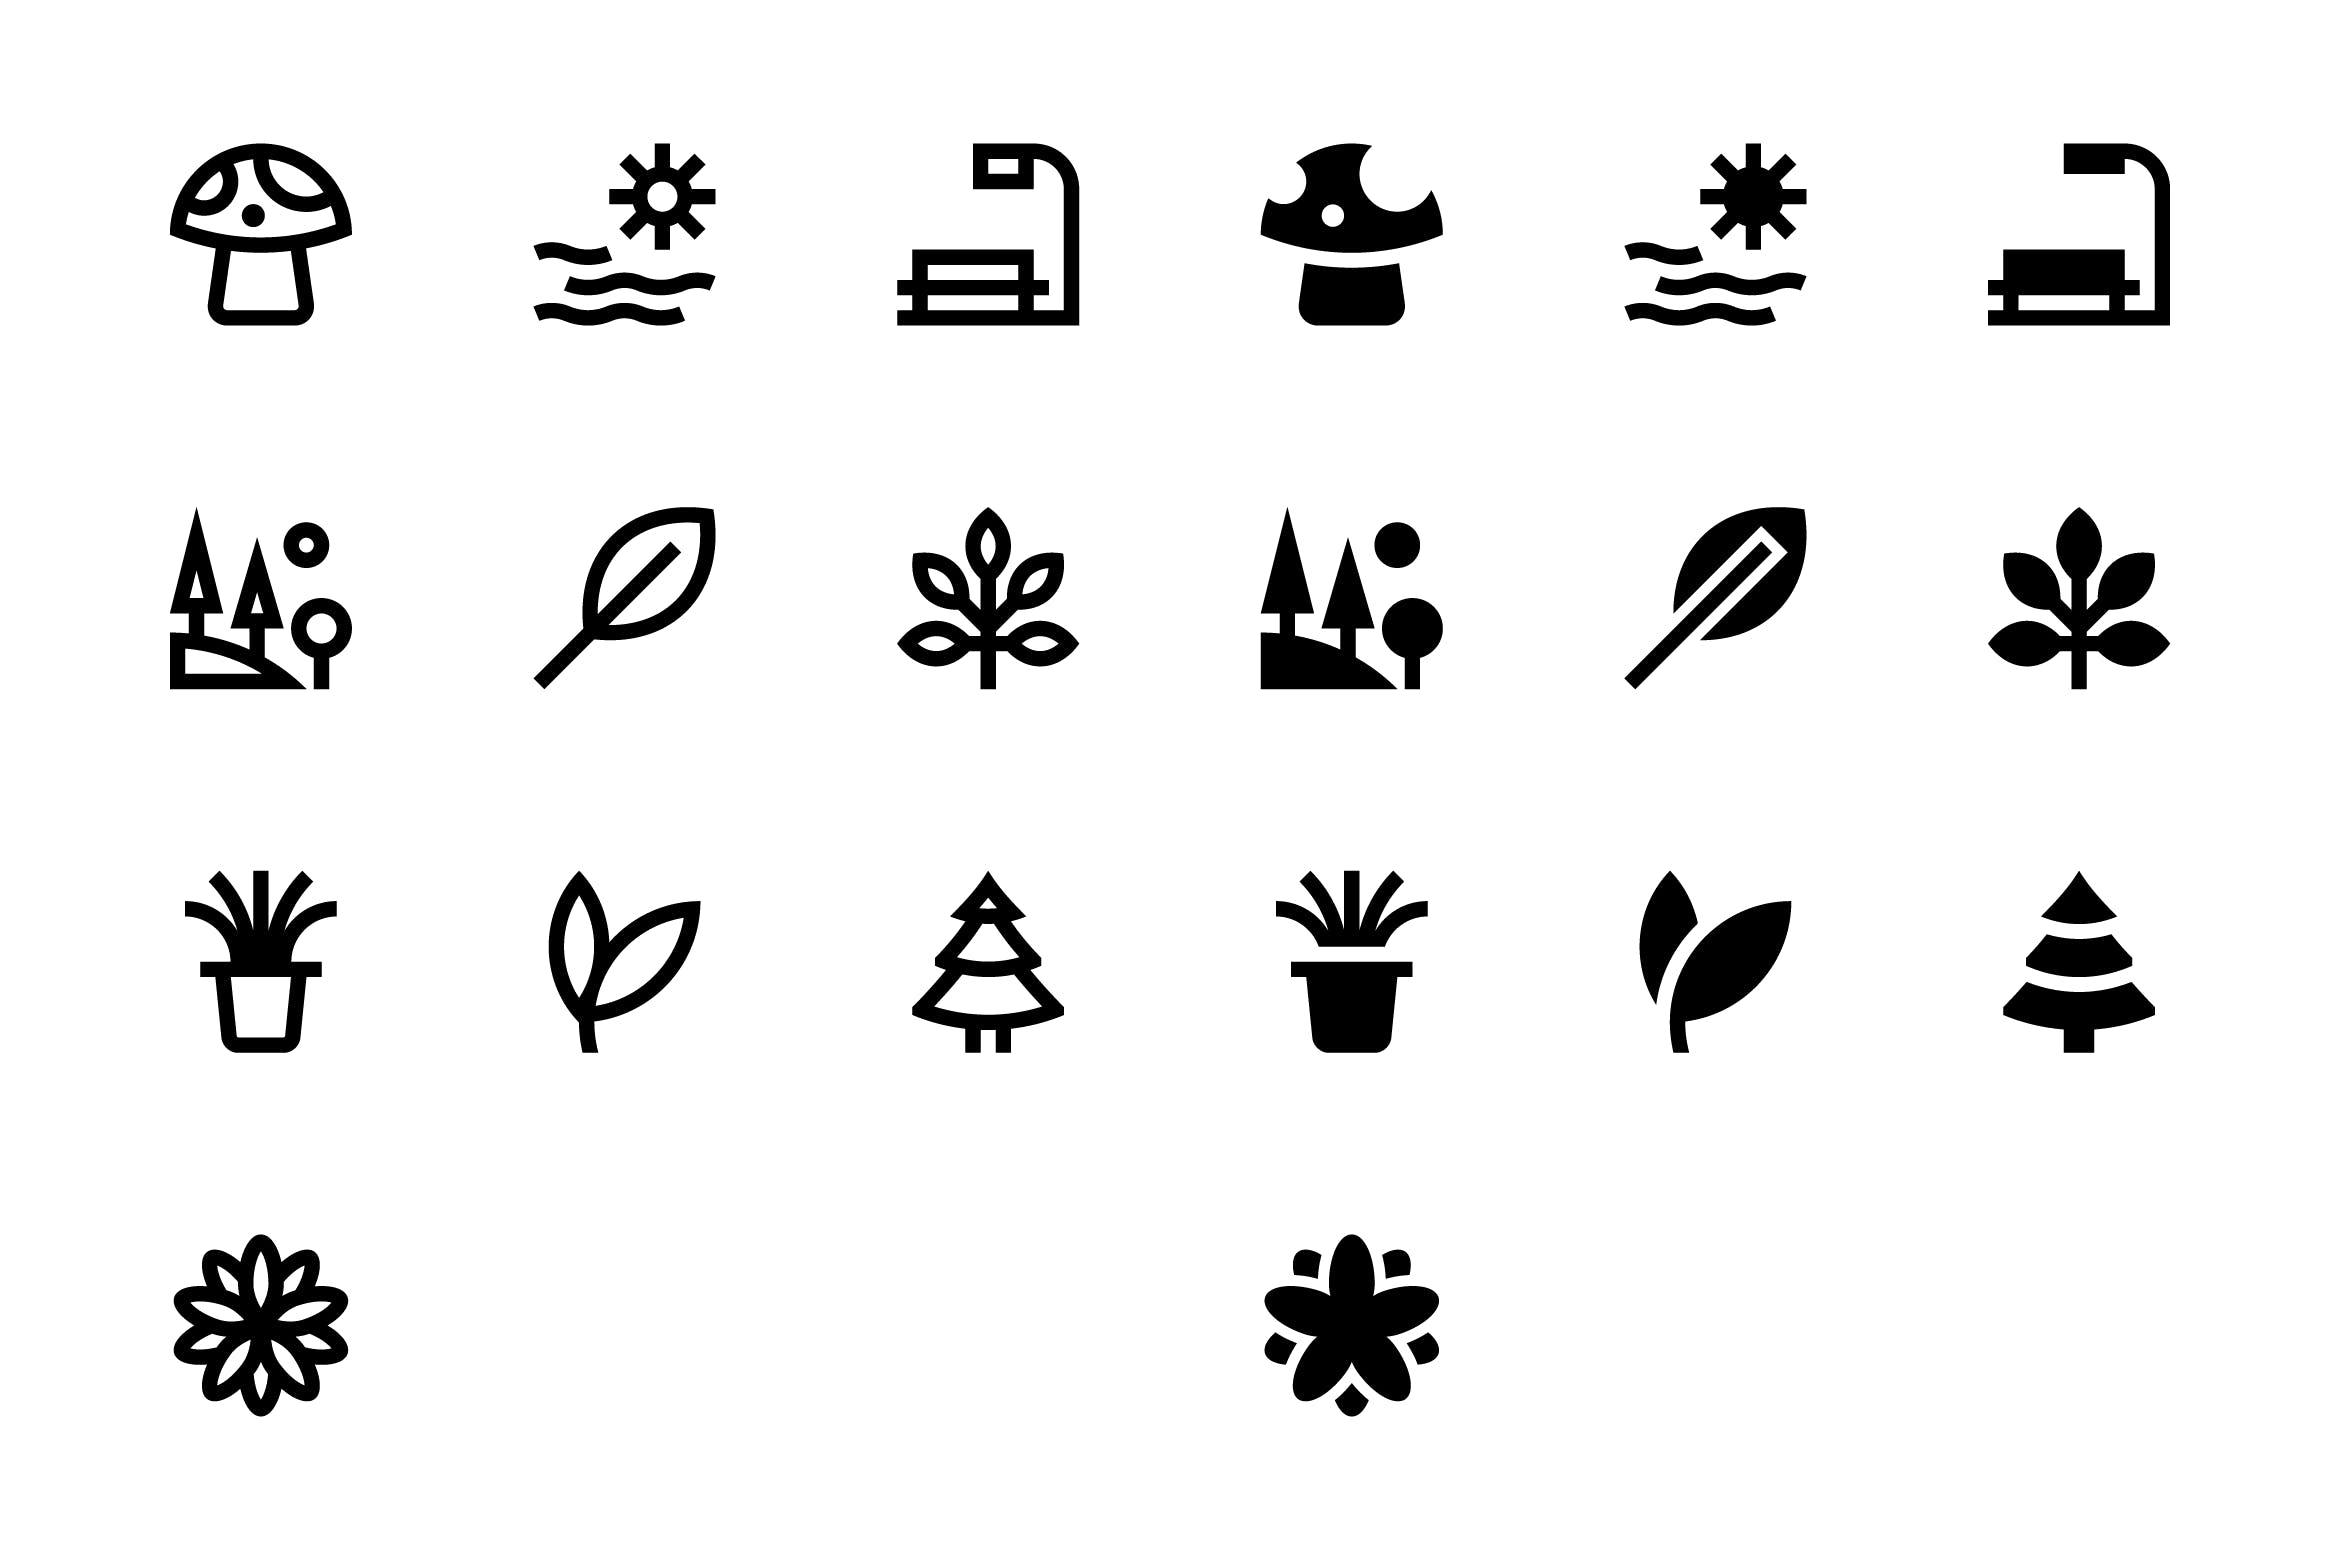 20枚自然主题SVG矢量16设计素材网精选图标#3 20 Nature Icons #3插图